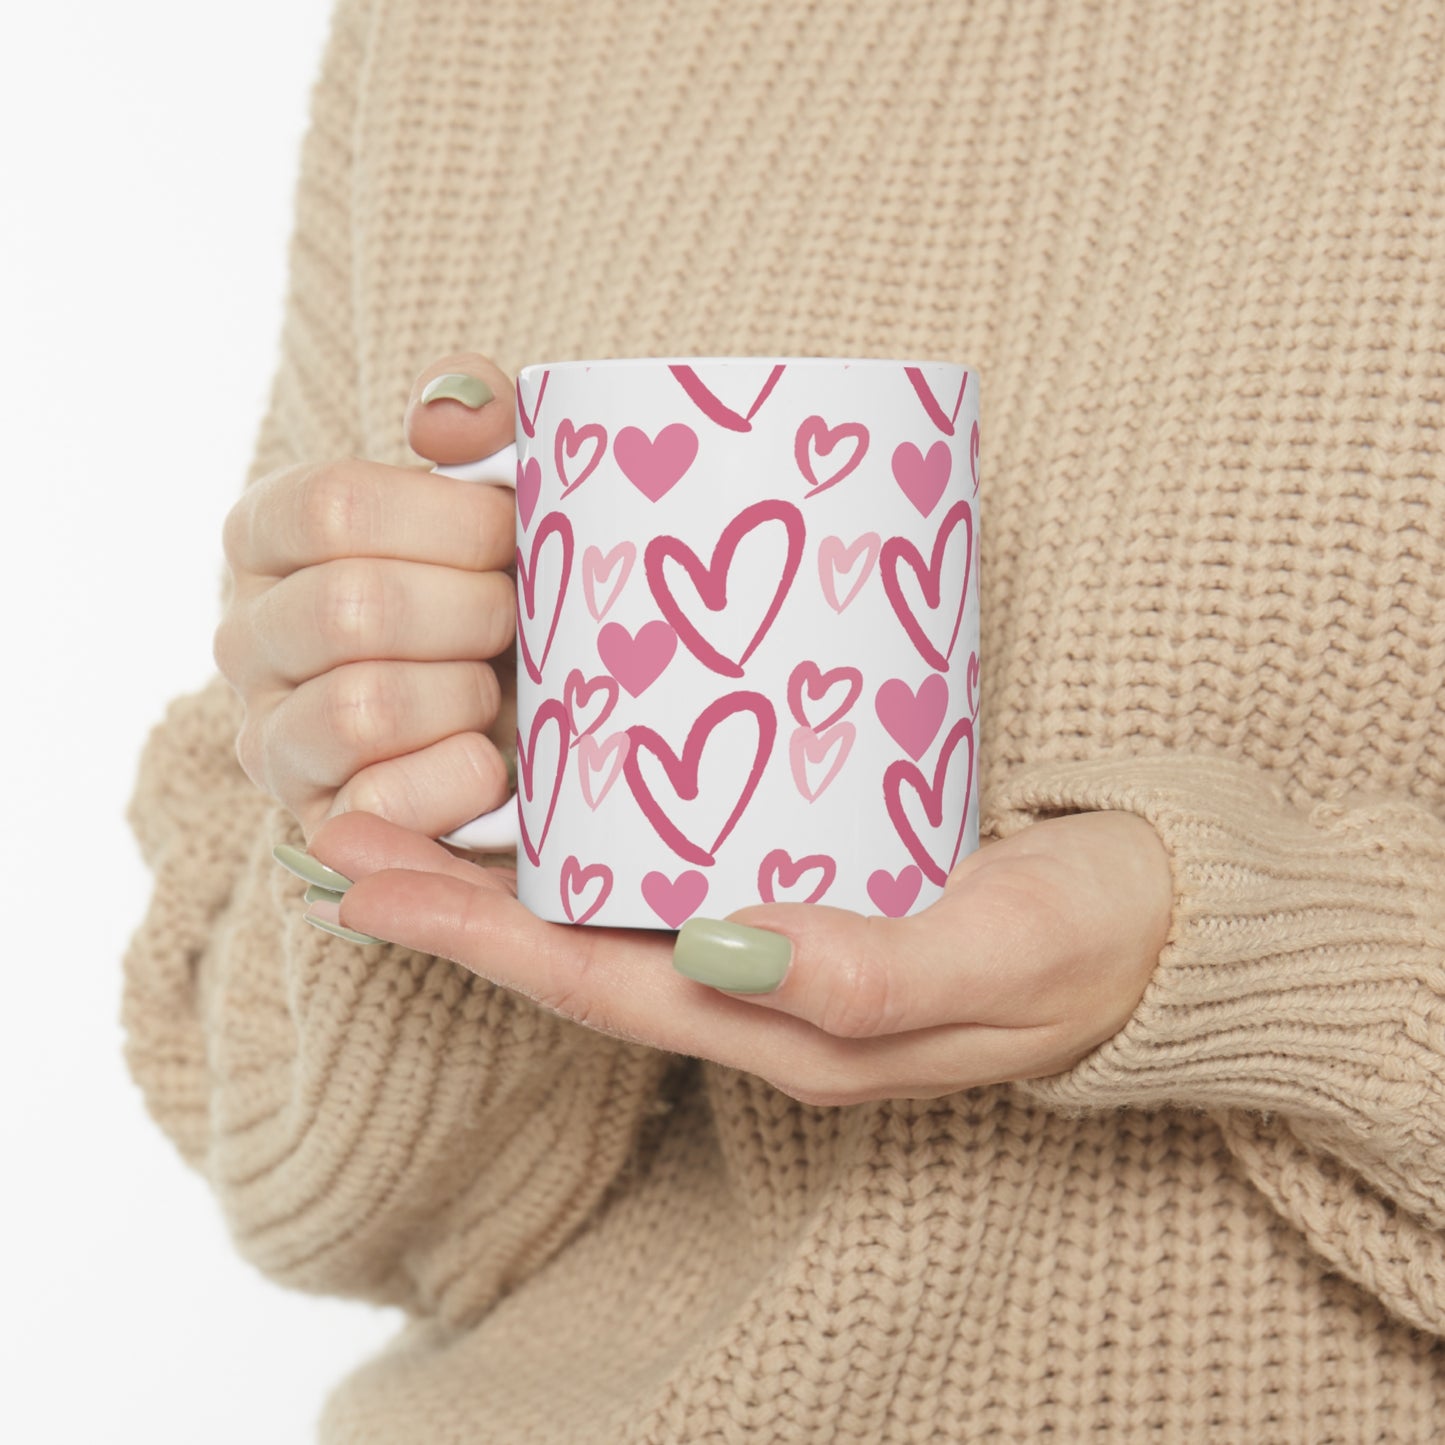 You Have My Heart Ceramic Mug